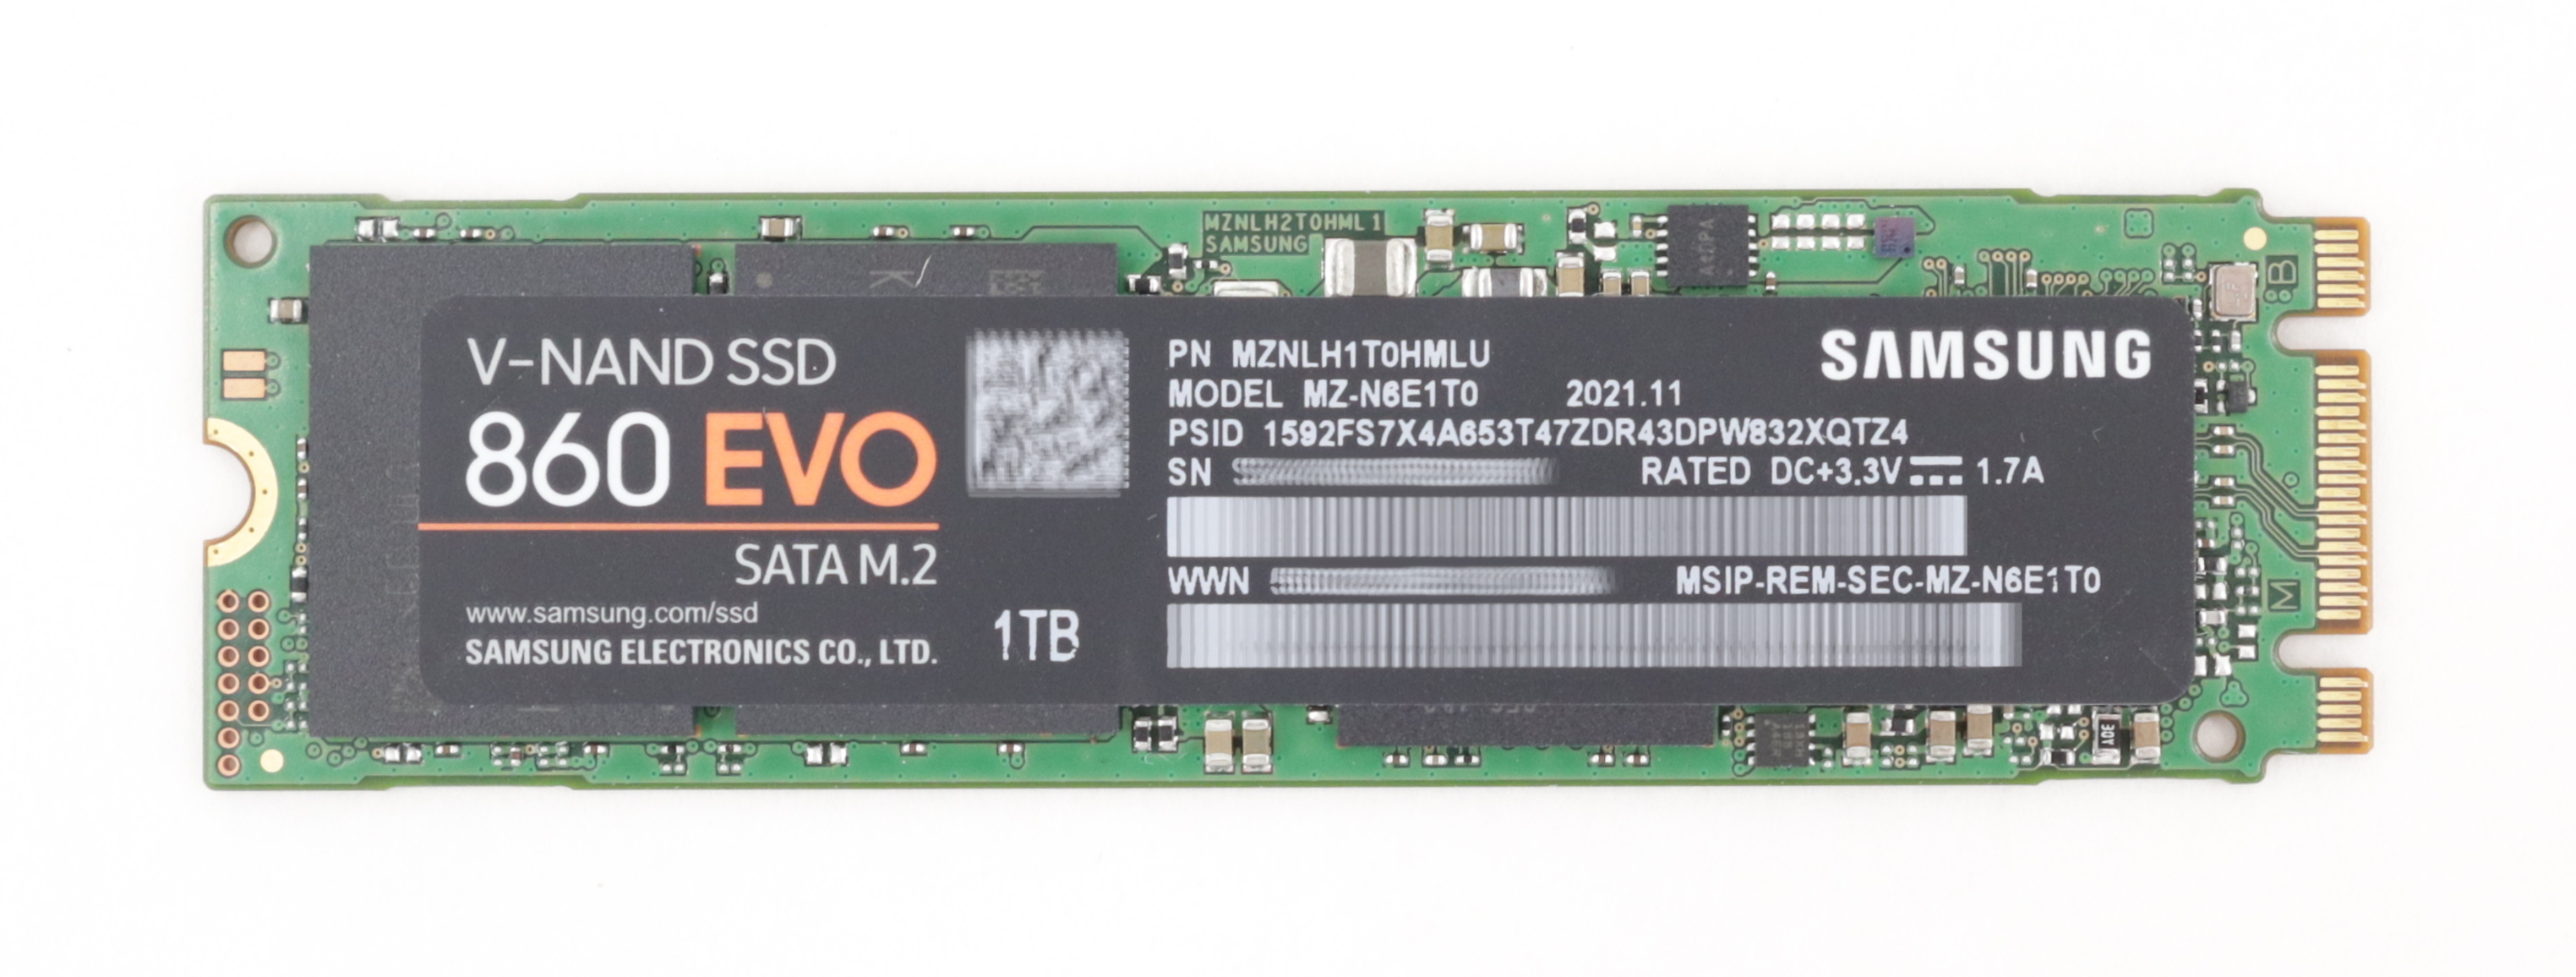 Samsung 1TB MZ-N6E1T0 V-Nand SSD 860 EVO SATA M.2 MZNLH1T0HMLU - Click Image to Close